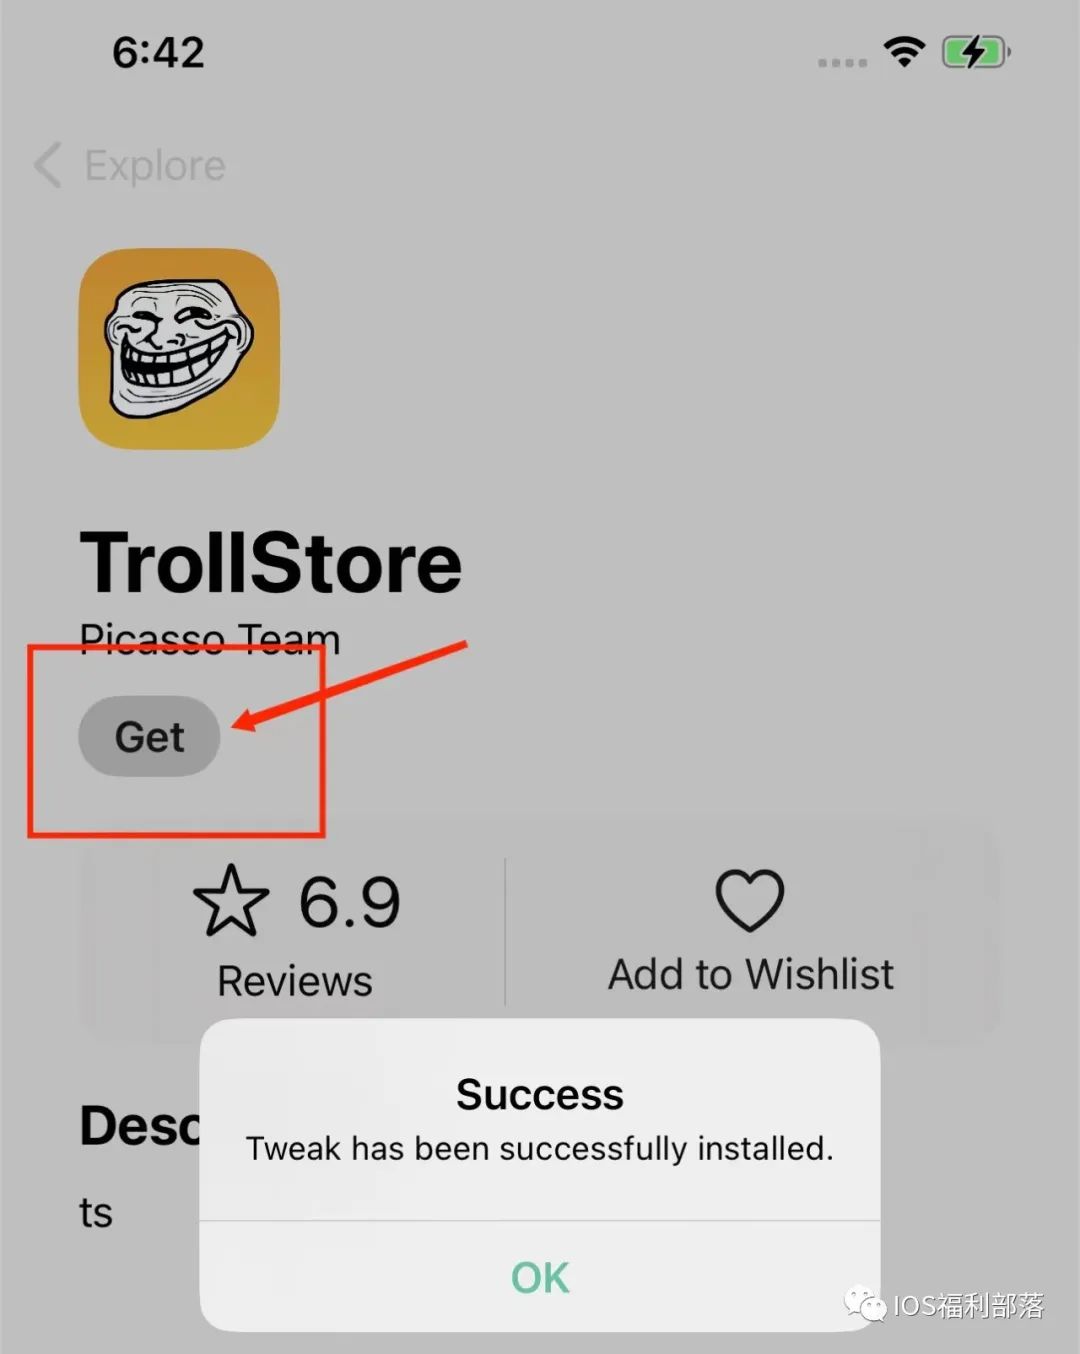 trollstore2/巨魔商店 2 即将发布！iOS14.0-16.6 免越狱永久安装第三方应用！iPhone/iPad不受限制安装第三方app